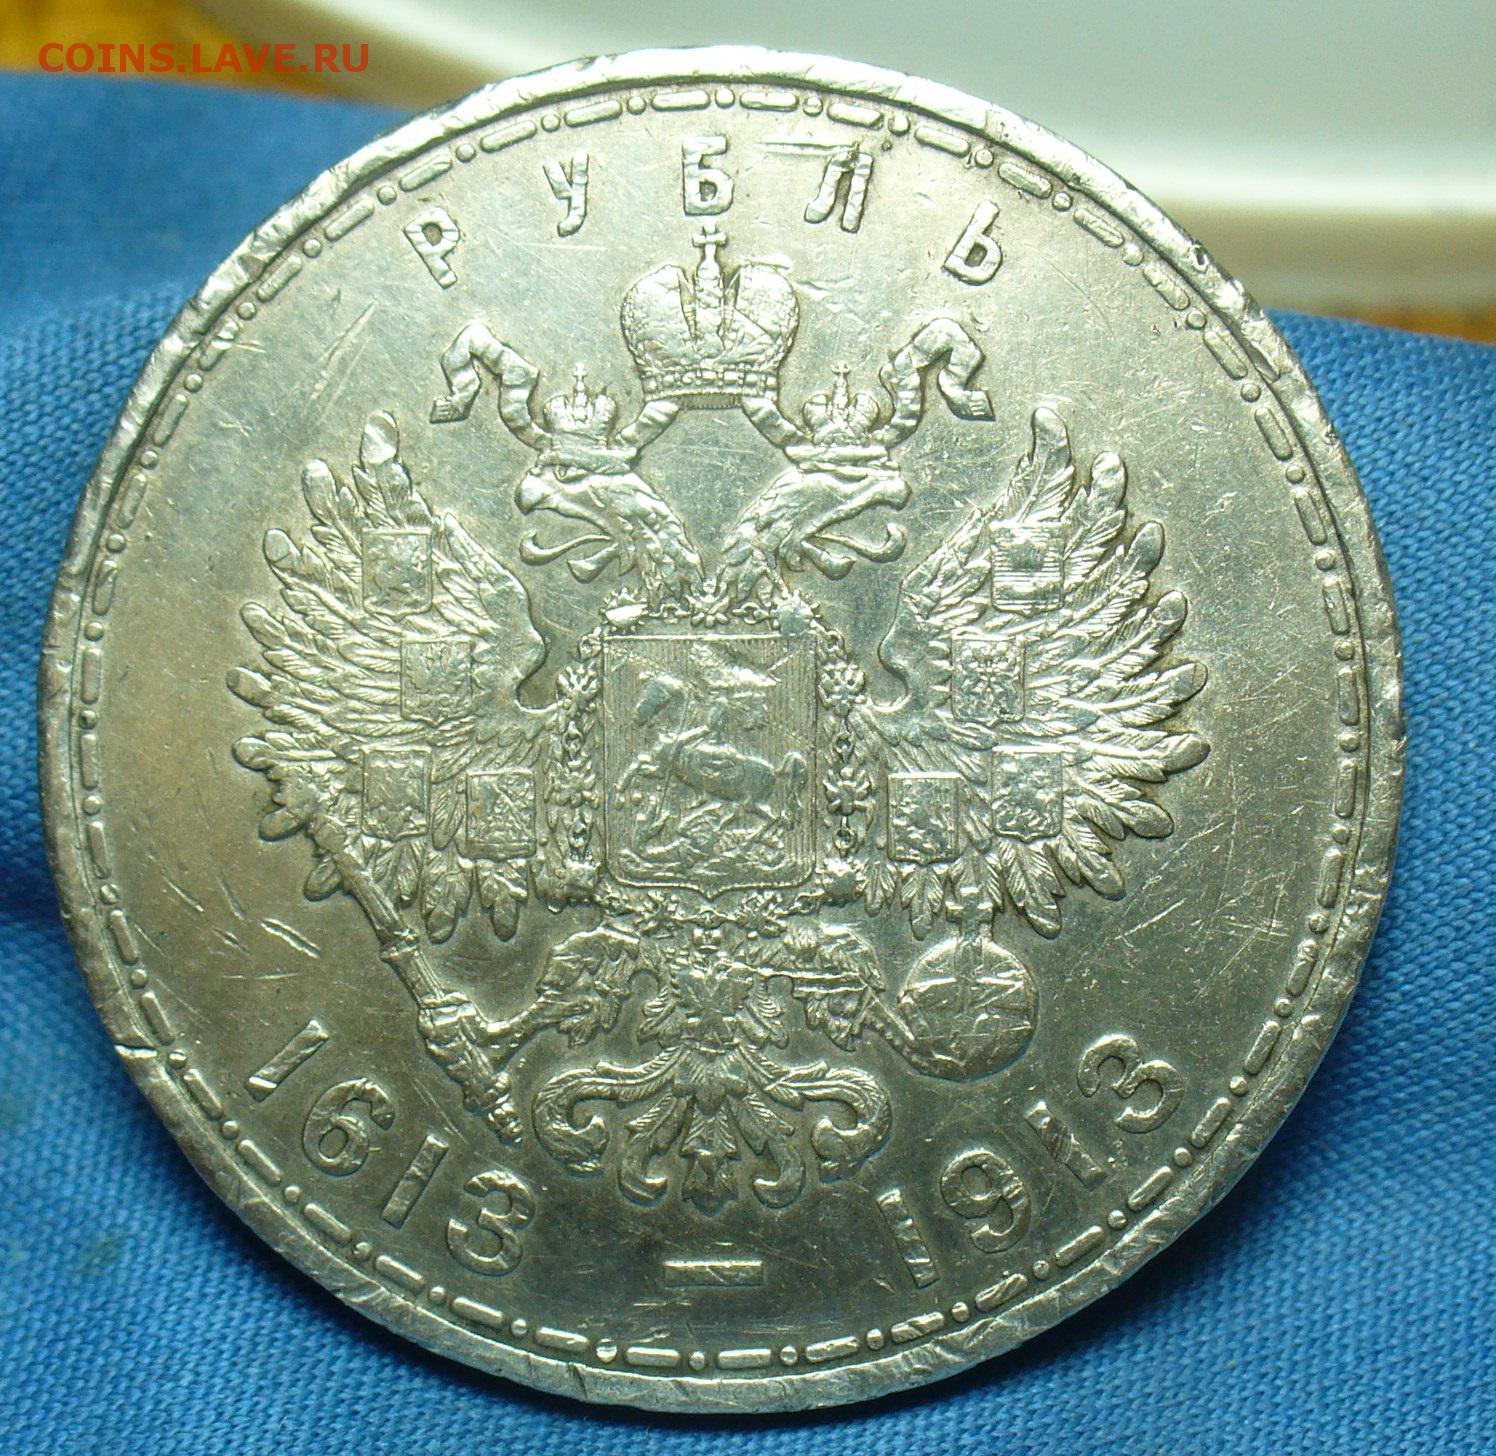 13 19 в рублях. Рубли 19 века. 5 Рублей монета 19 век. 19 Рублей. 20 019 Рублей.